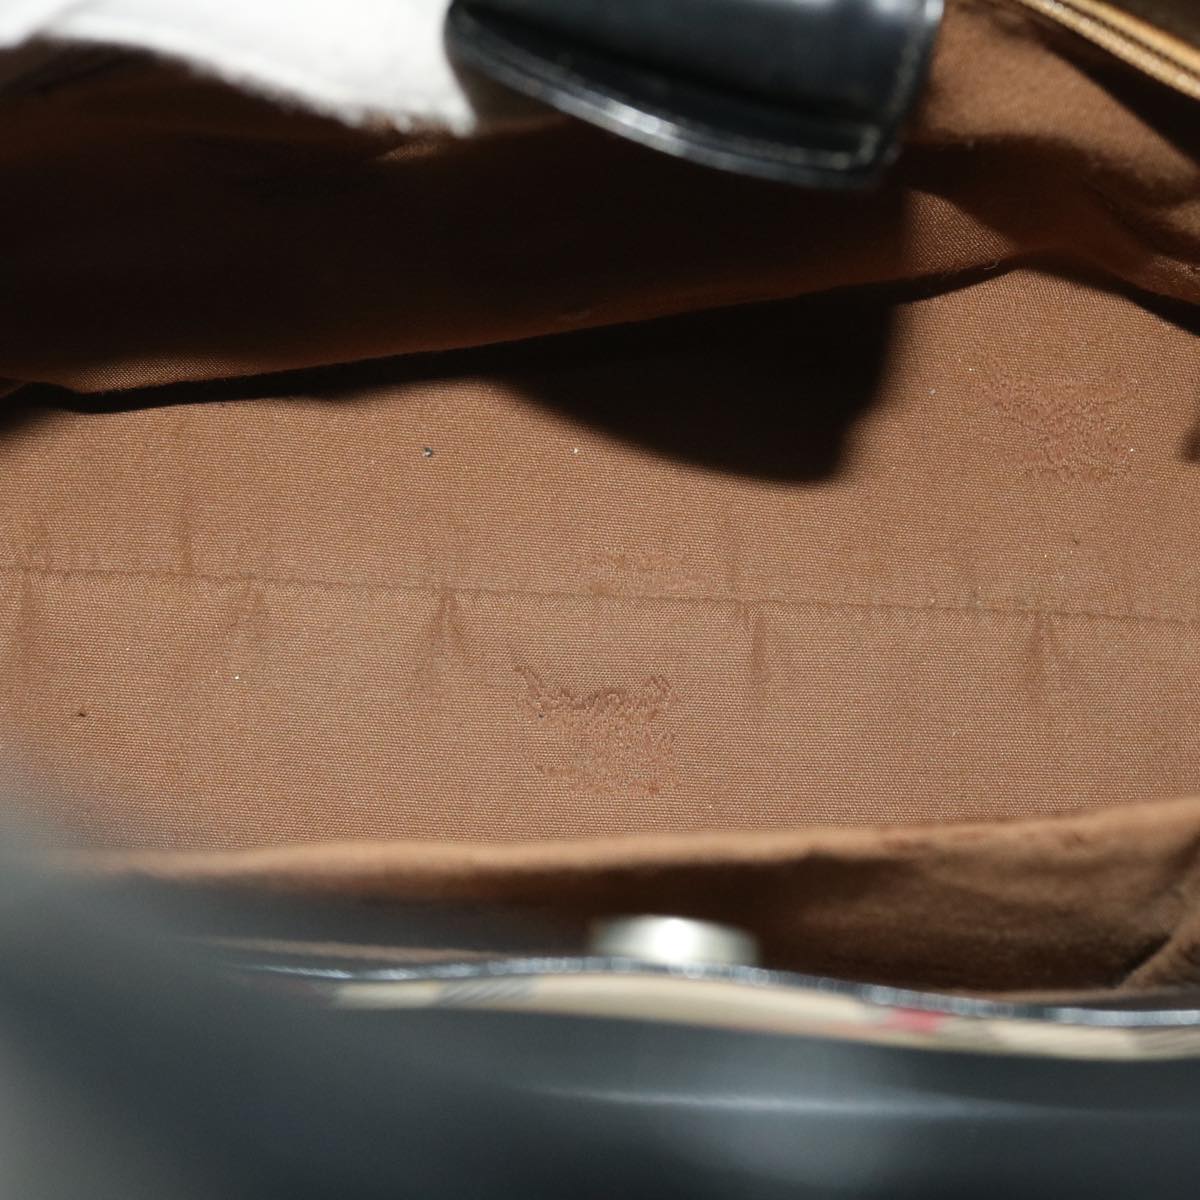 Burberrys Nova Check Shoulder Bag Canvas Leather Beige Black Auth 53783